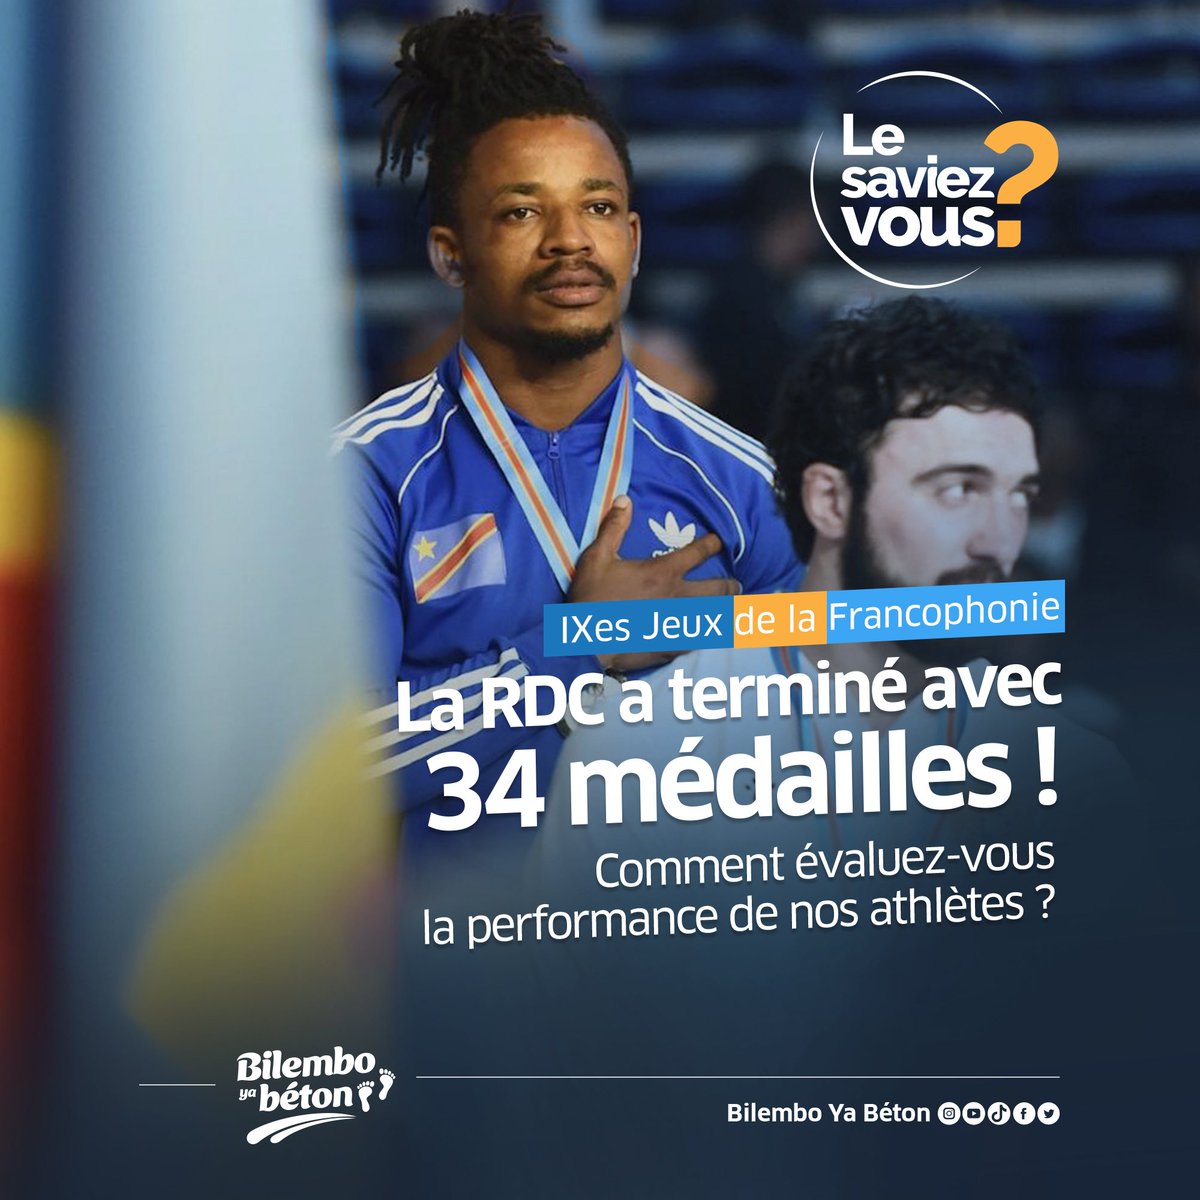 #LeSaviezVous ?
Comment évaluez-vous la performance de nos athlètes ?🇨🇩

#JeuxDeLaFrancophonie